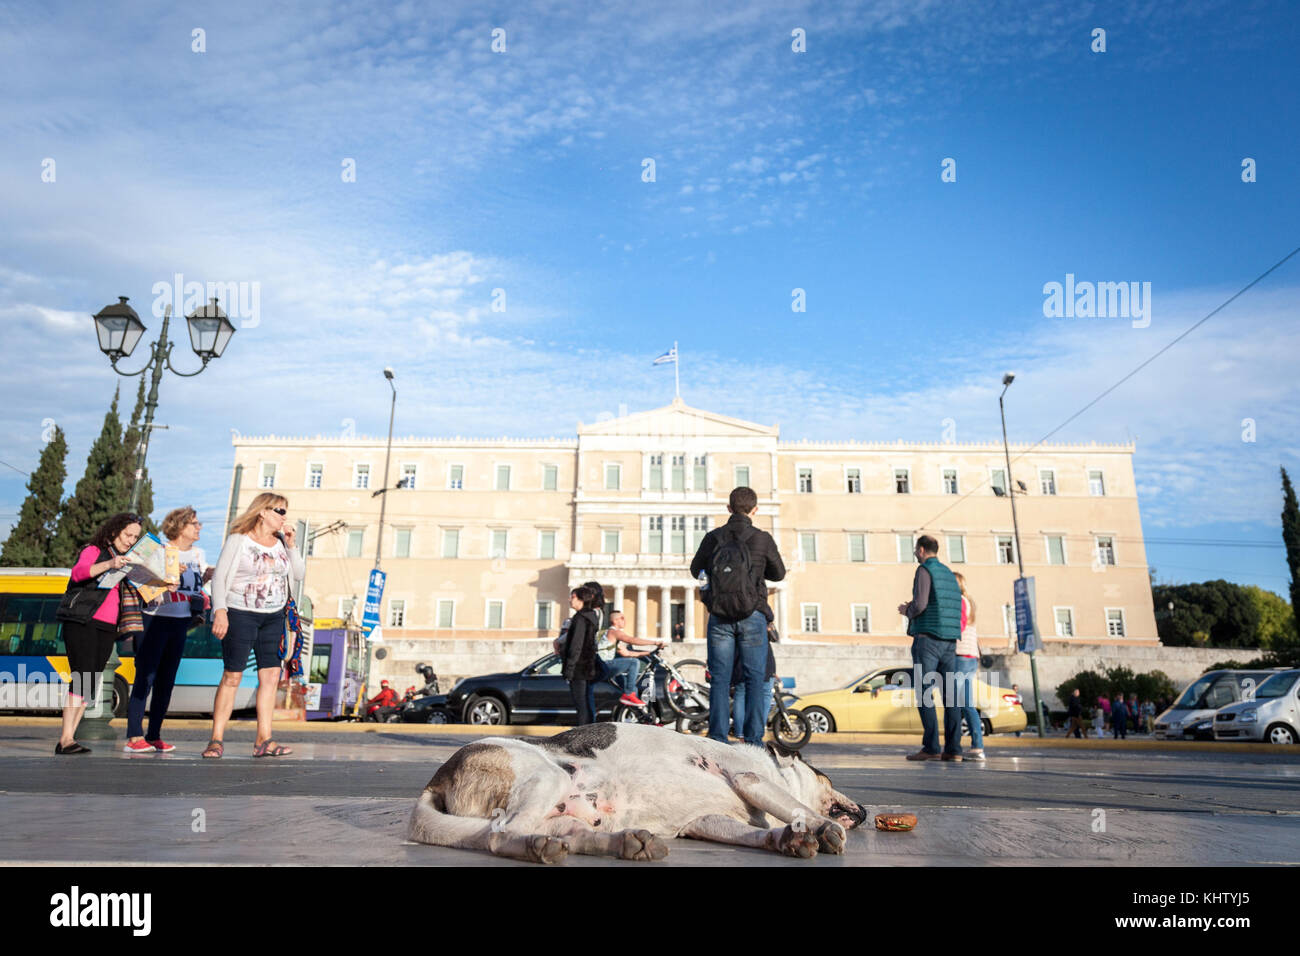 Athen, Griechenland - November 3, 2017: Hund schläft auf dem Syntagma-Platz vor dem Parlament. Dieser Platz ist eine der wichtigsten Sehenswürdigkeiten von Athen, Ca Stockfoto